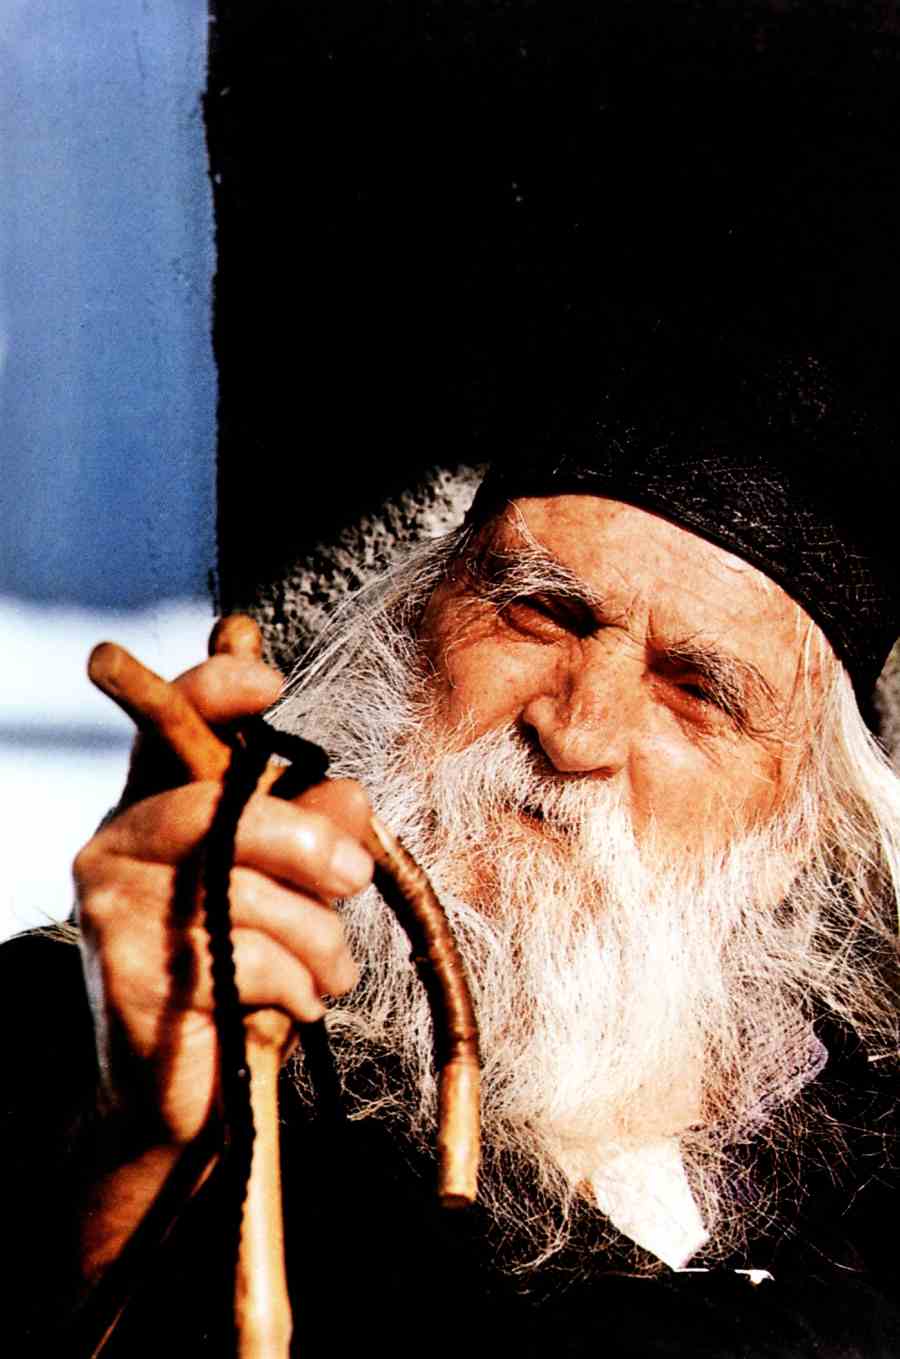 Ο Γέροντας Αβράμιος στη δύση του βίου του (φωτ. μοναχού Χαρίτωνος Καρουλιώτου). Πηγή φώτο: Μοναχού Χαρίτωνος – Monk Chariton, Ματιές στον Άθω – Images of Athos, Έκδοσις Γ΄, 2007 